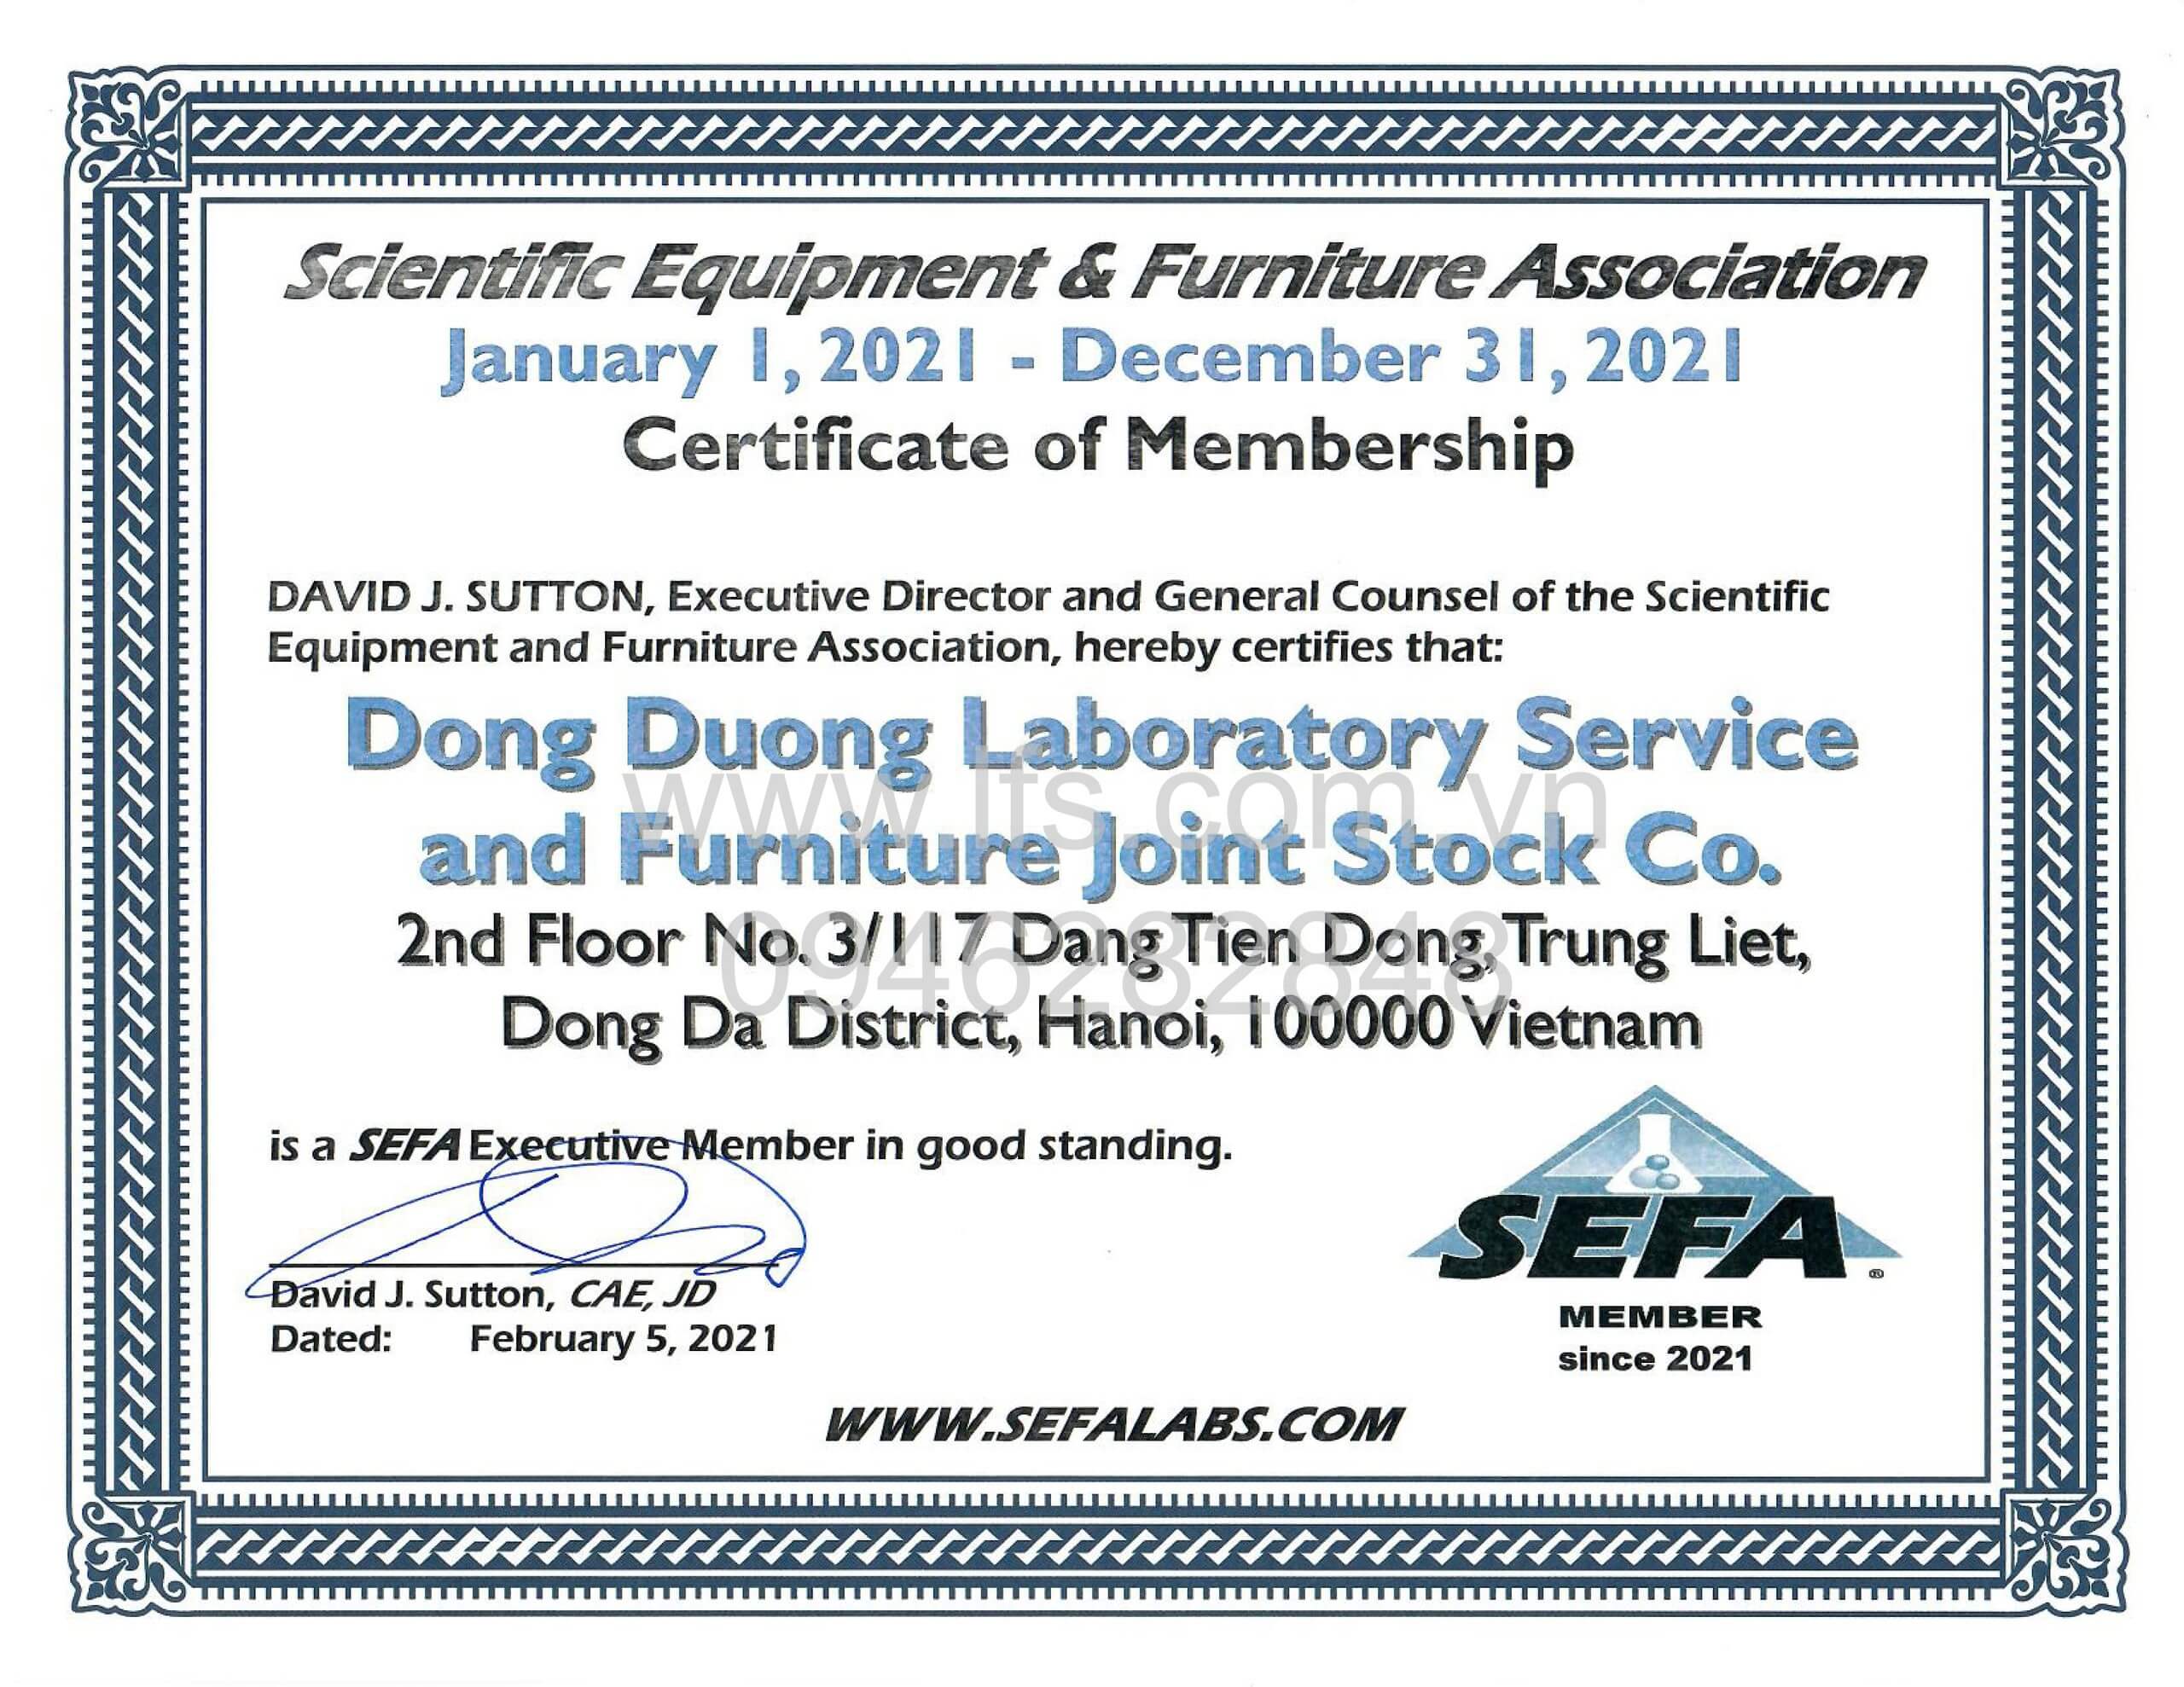 Công ty LFS chính thức là thành viên của Hiệp hội SEFA